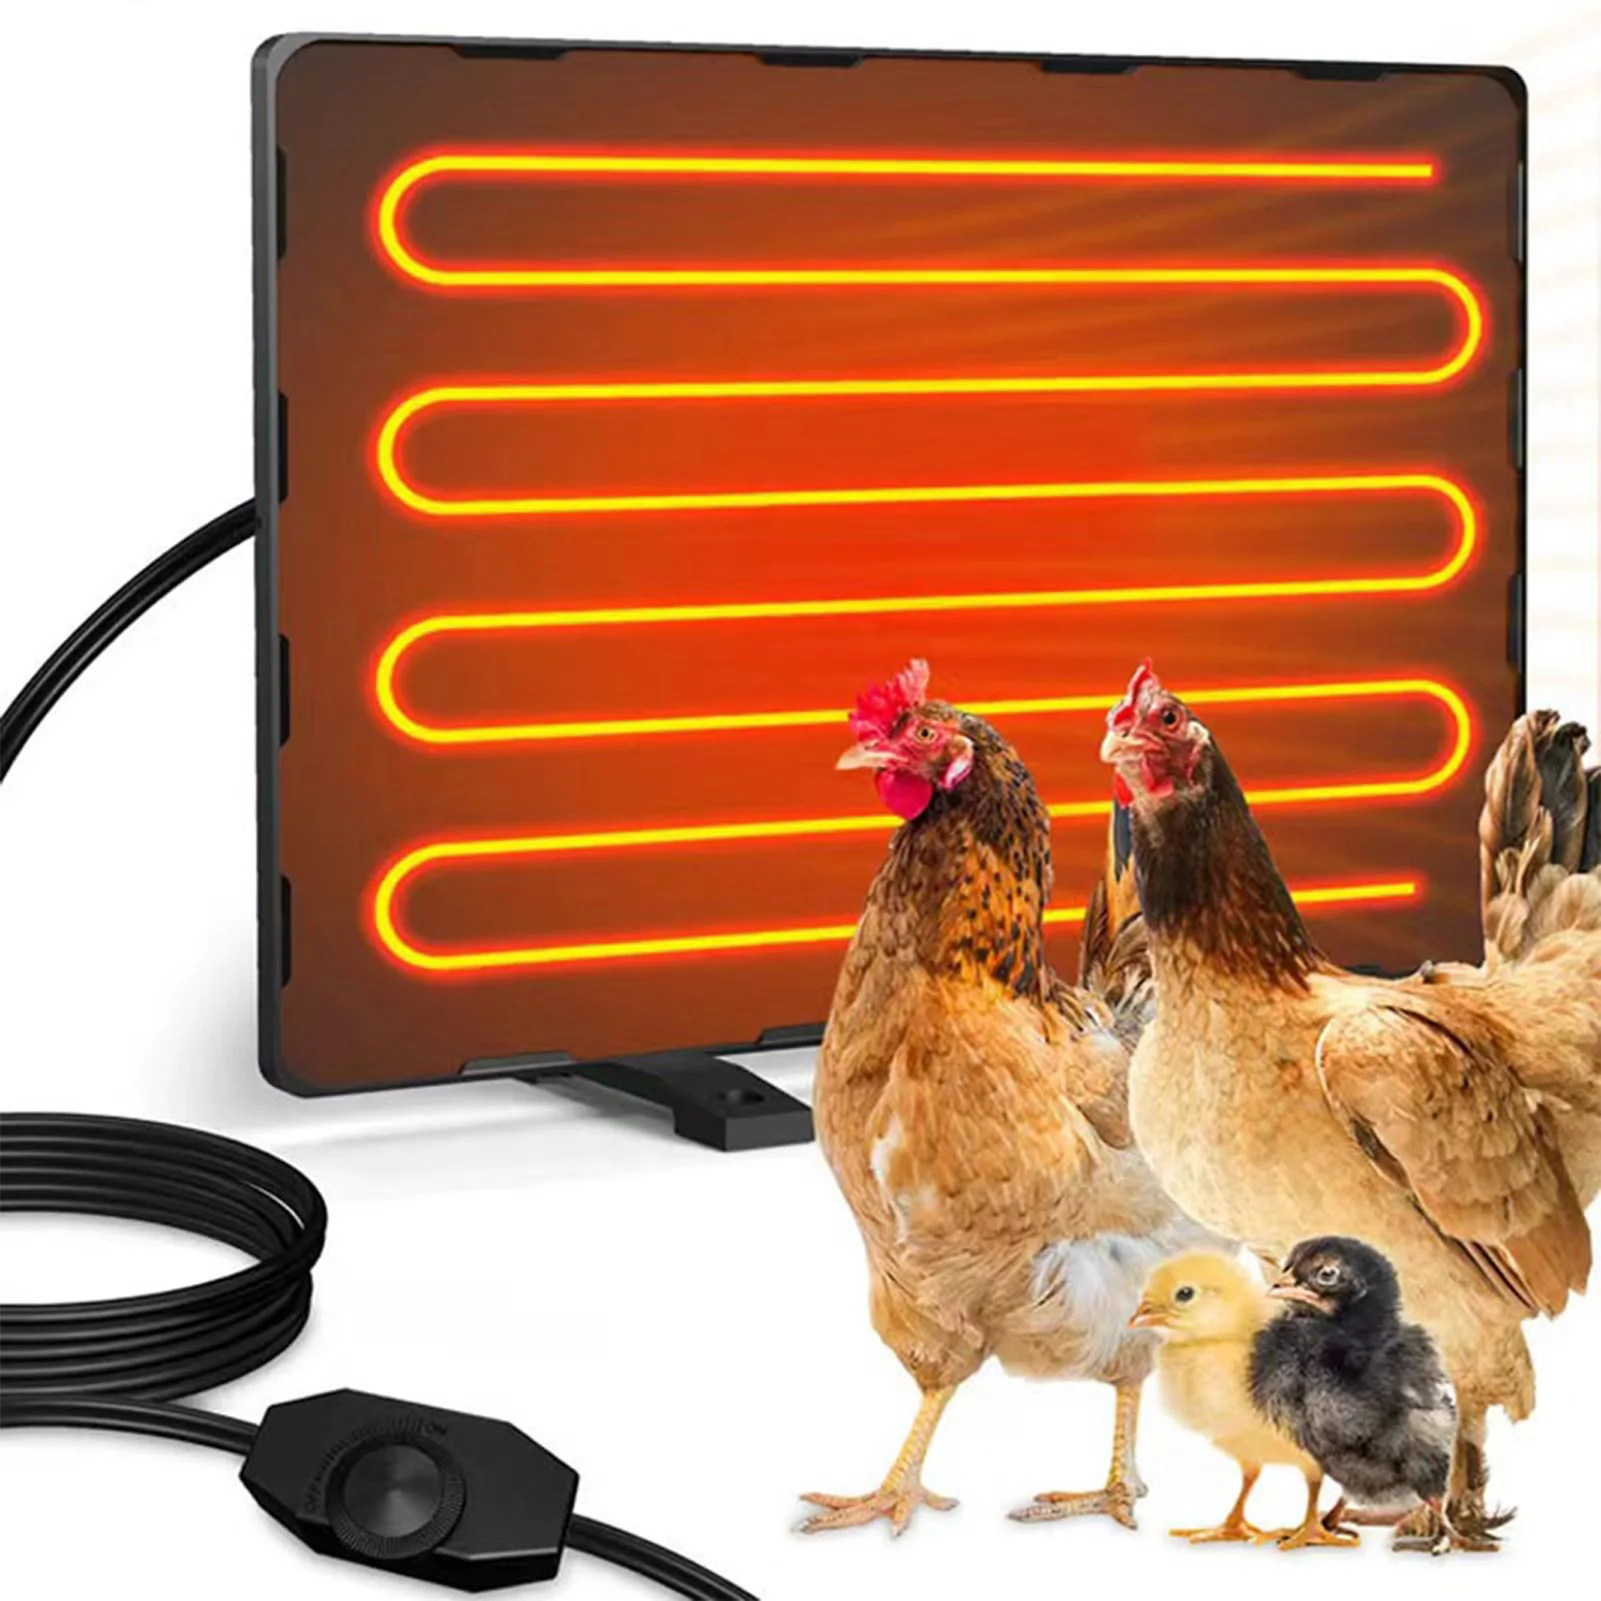 100W Chicken Coop Heater Effective Radiant Heat Range within 16''/40cm for Indoor/Outdoor Use